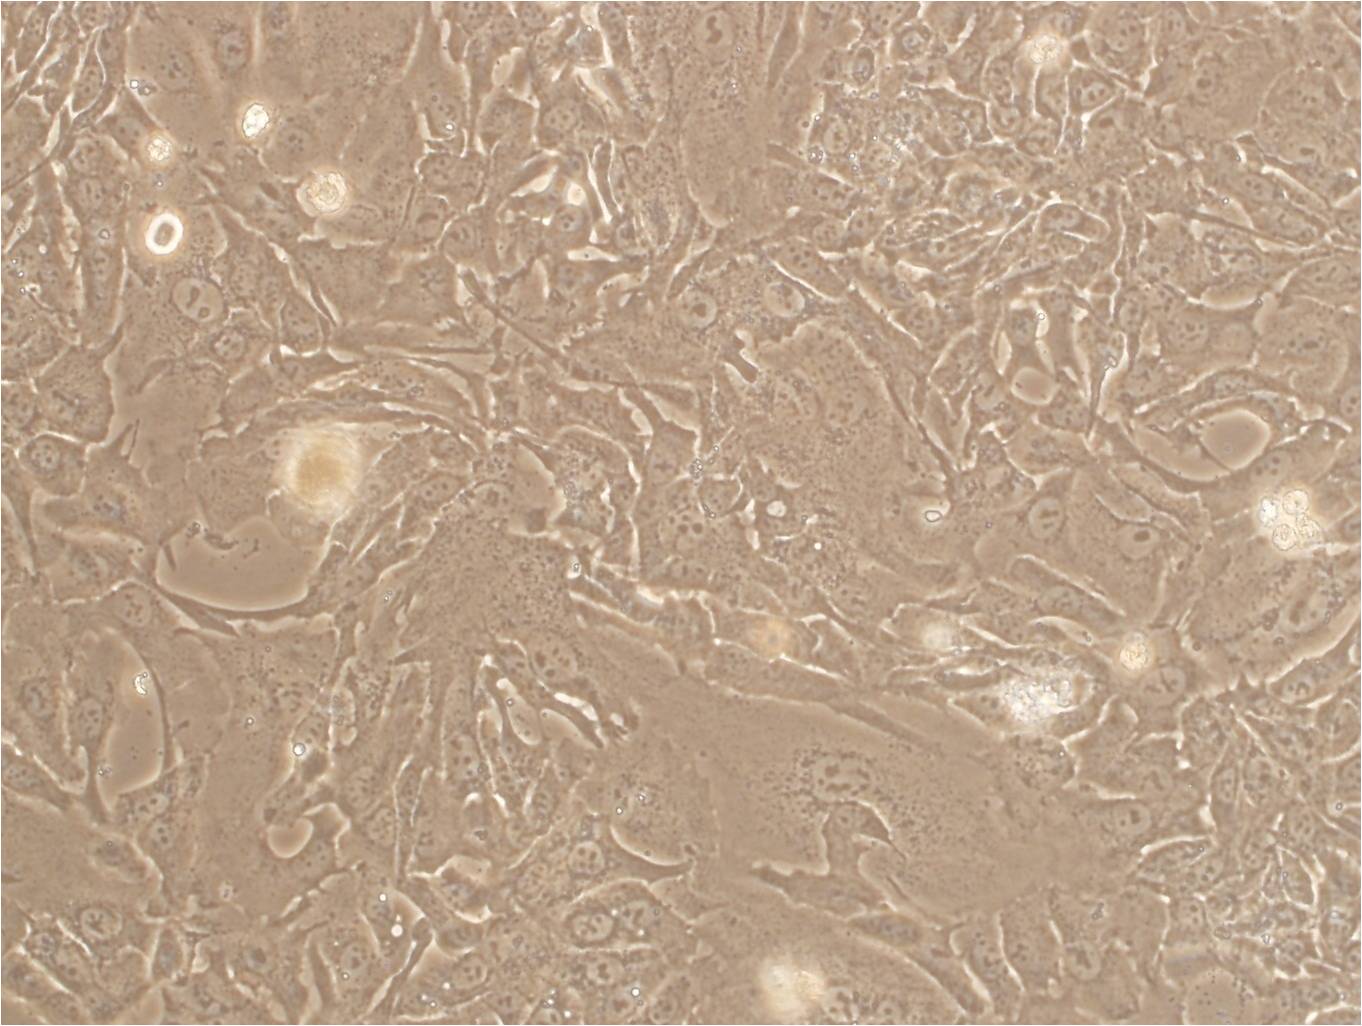 COV504 cell line人卵巢癌细胞系,COV504 cell line